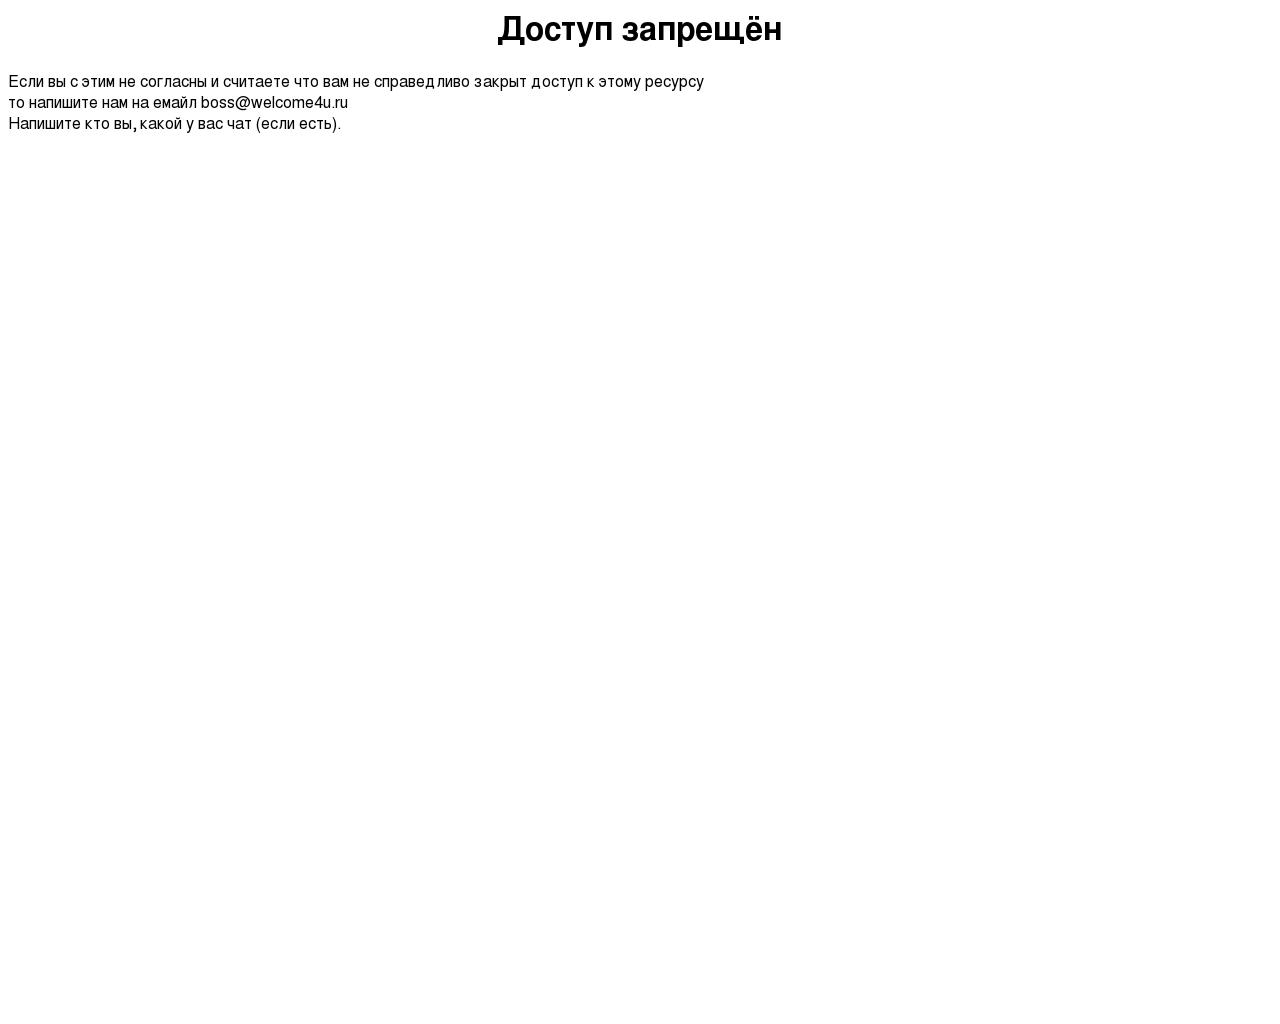 Изображение сайта 4sth.ru в разрешении 1280x1024